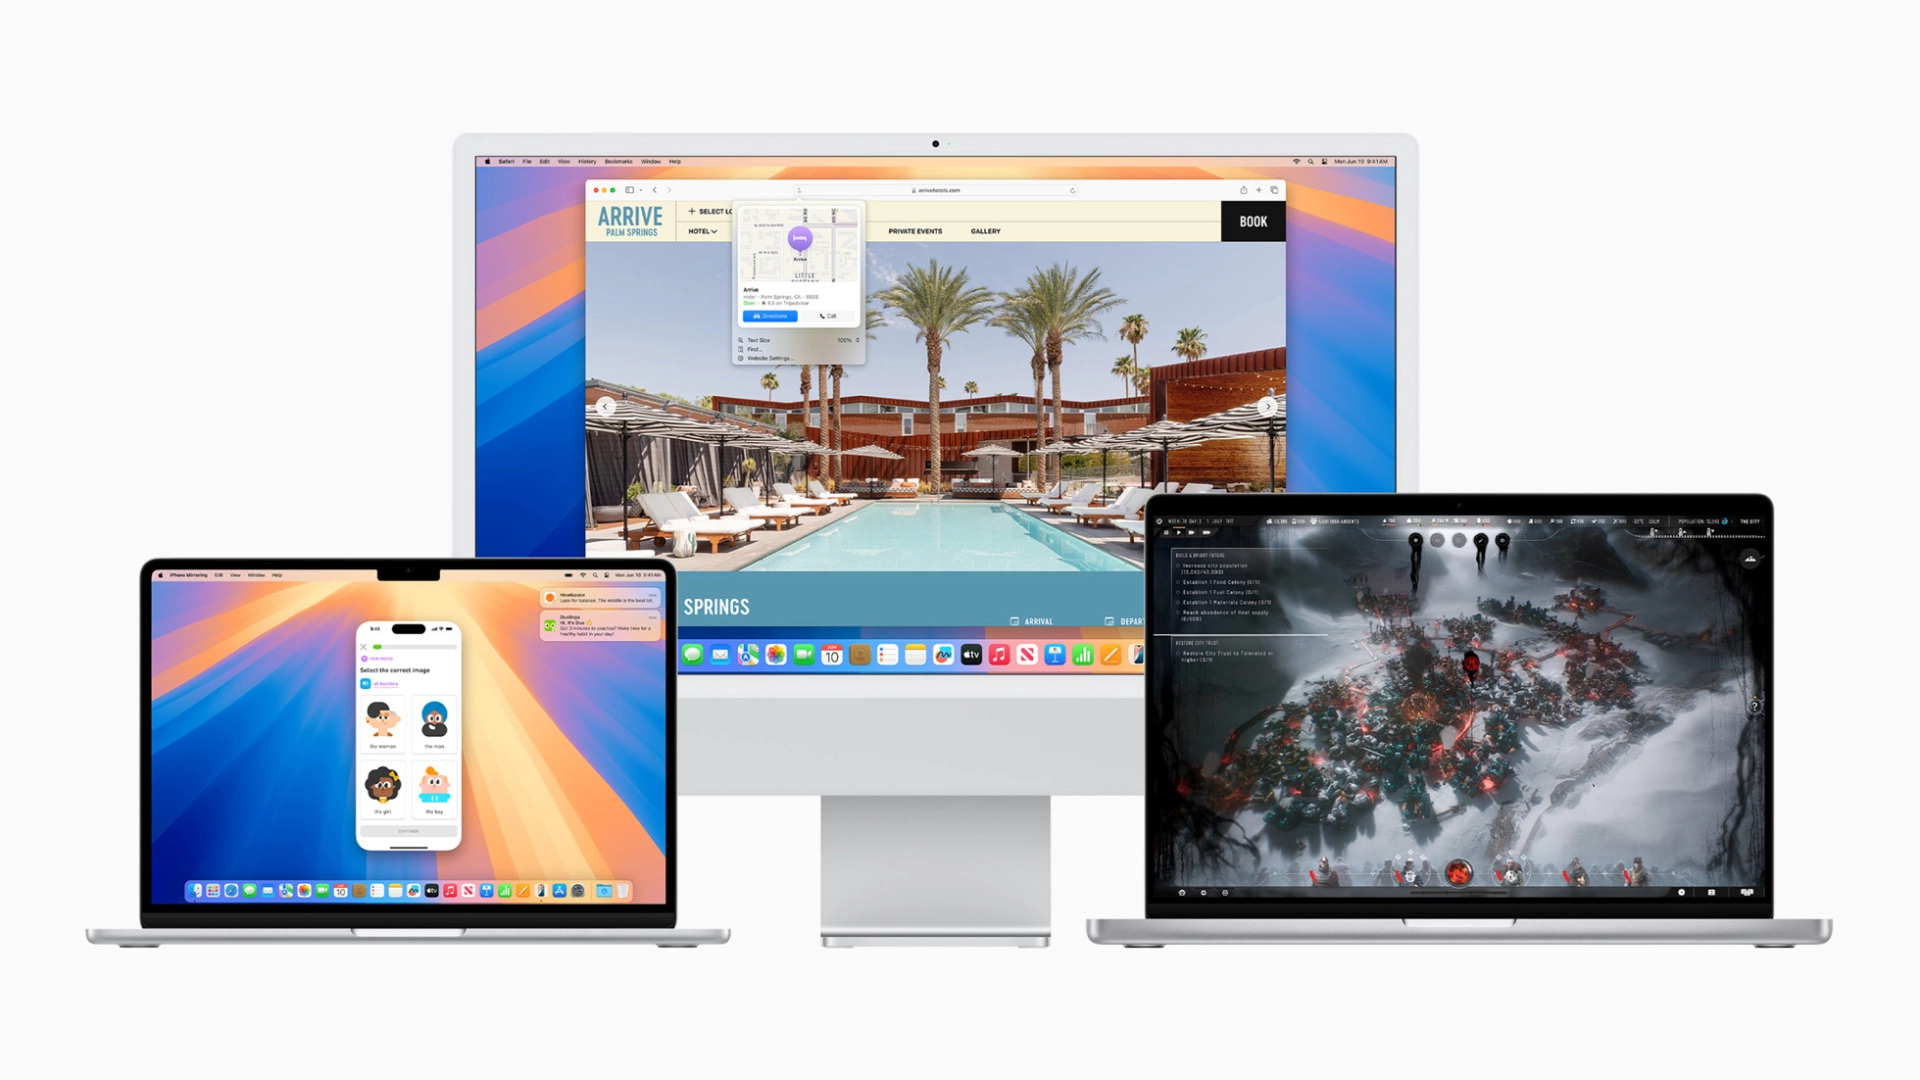 Apple представила macOS Sequoia